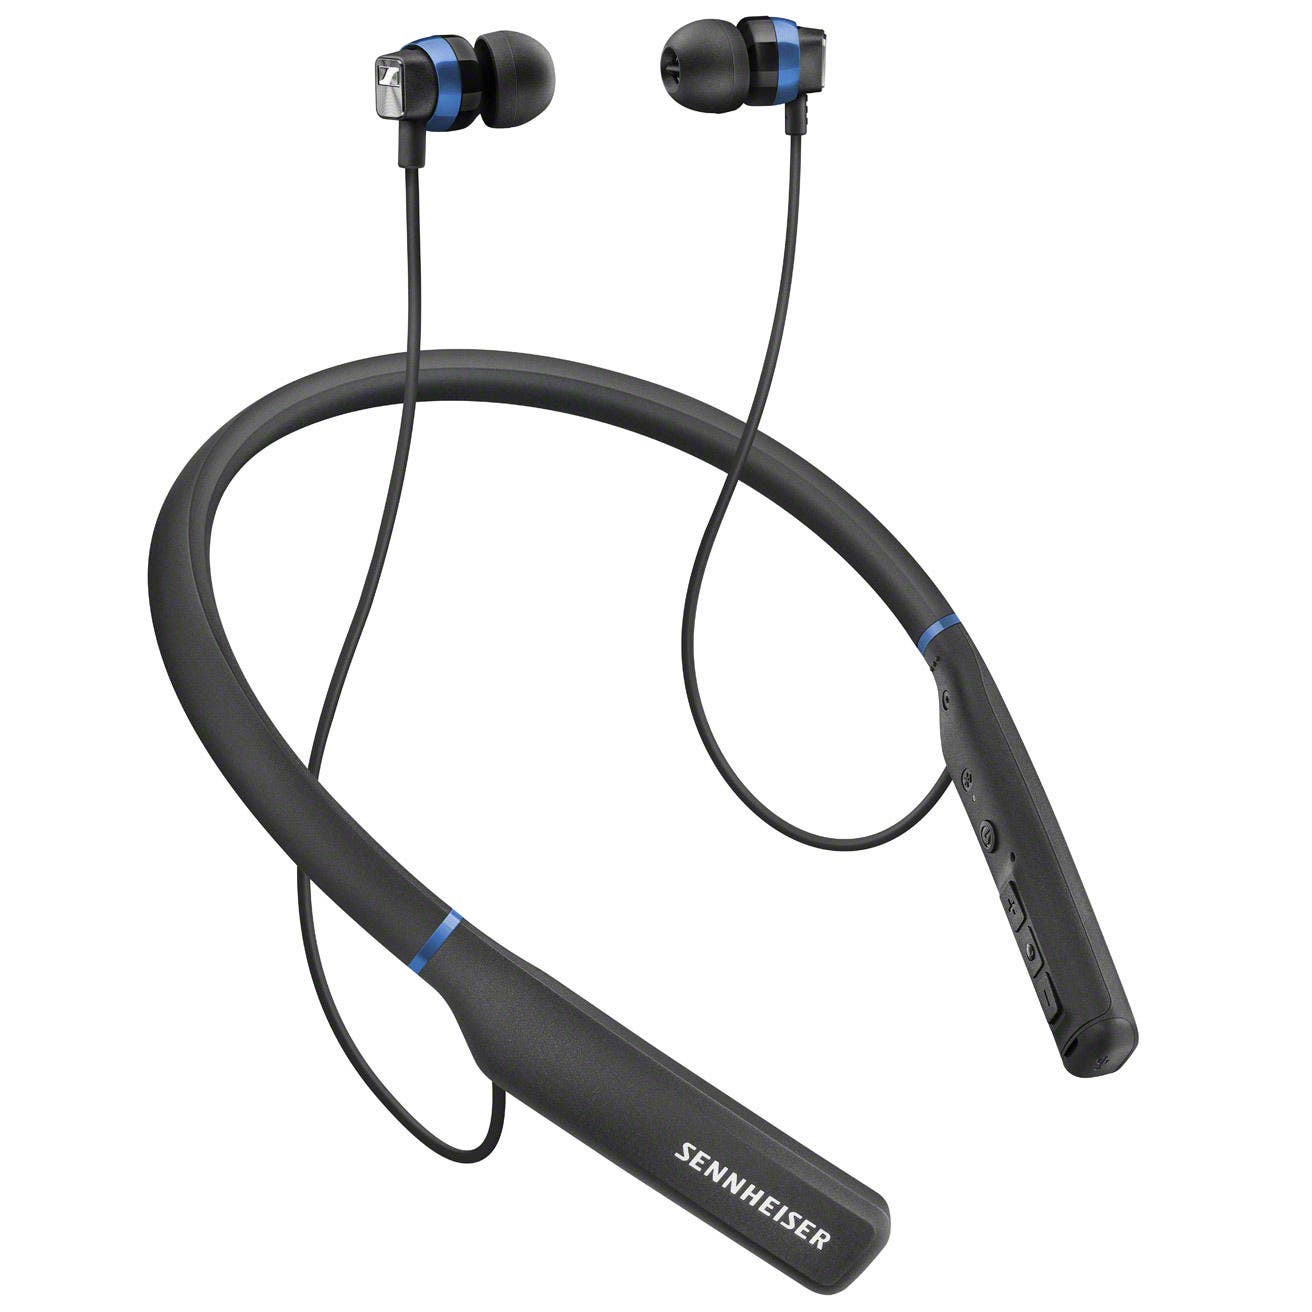 Sennheiser CX 7.00BT In-Ear Wireless Bluetooth Earphones